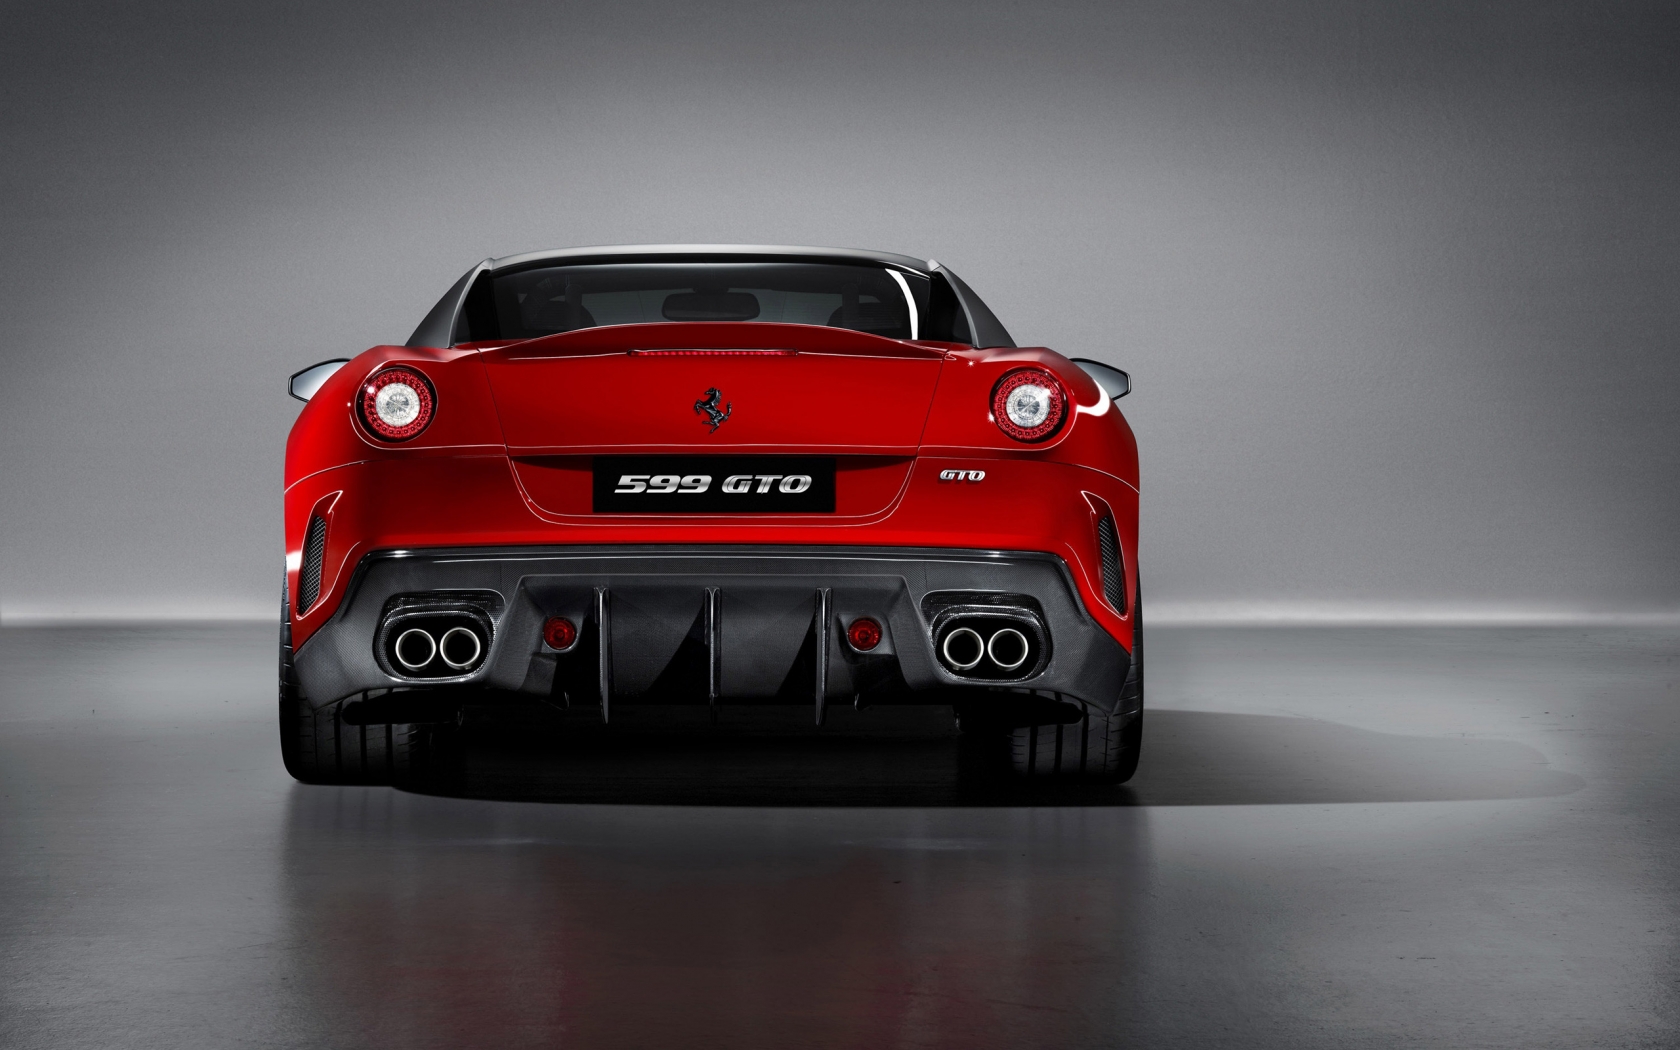 Ferrari 599 GTO Rear for 1680 x 1050 widescreen resolution